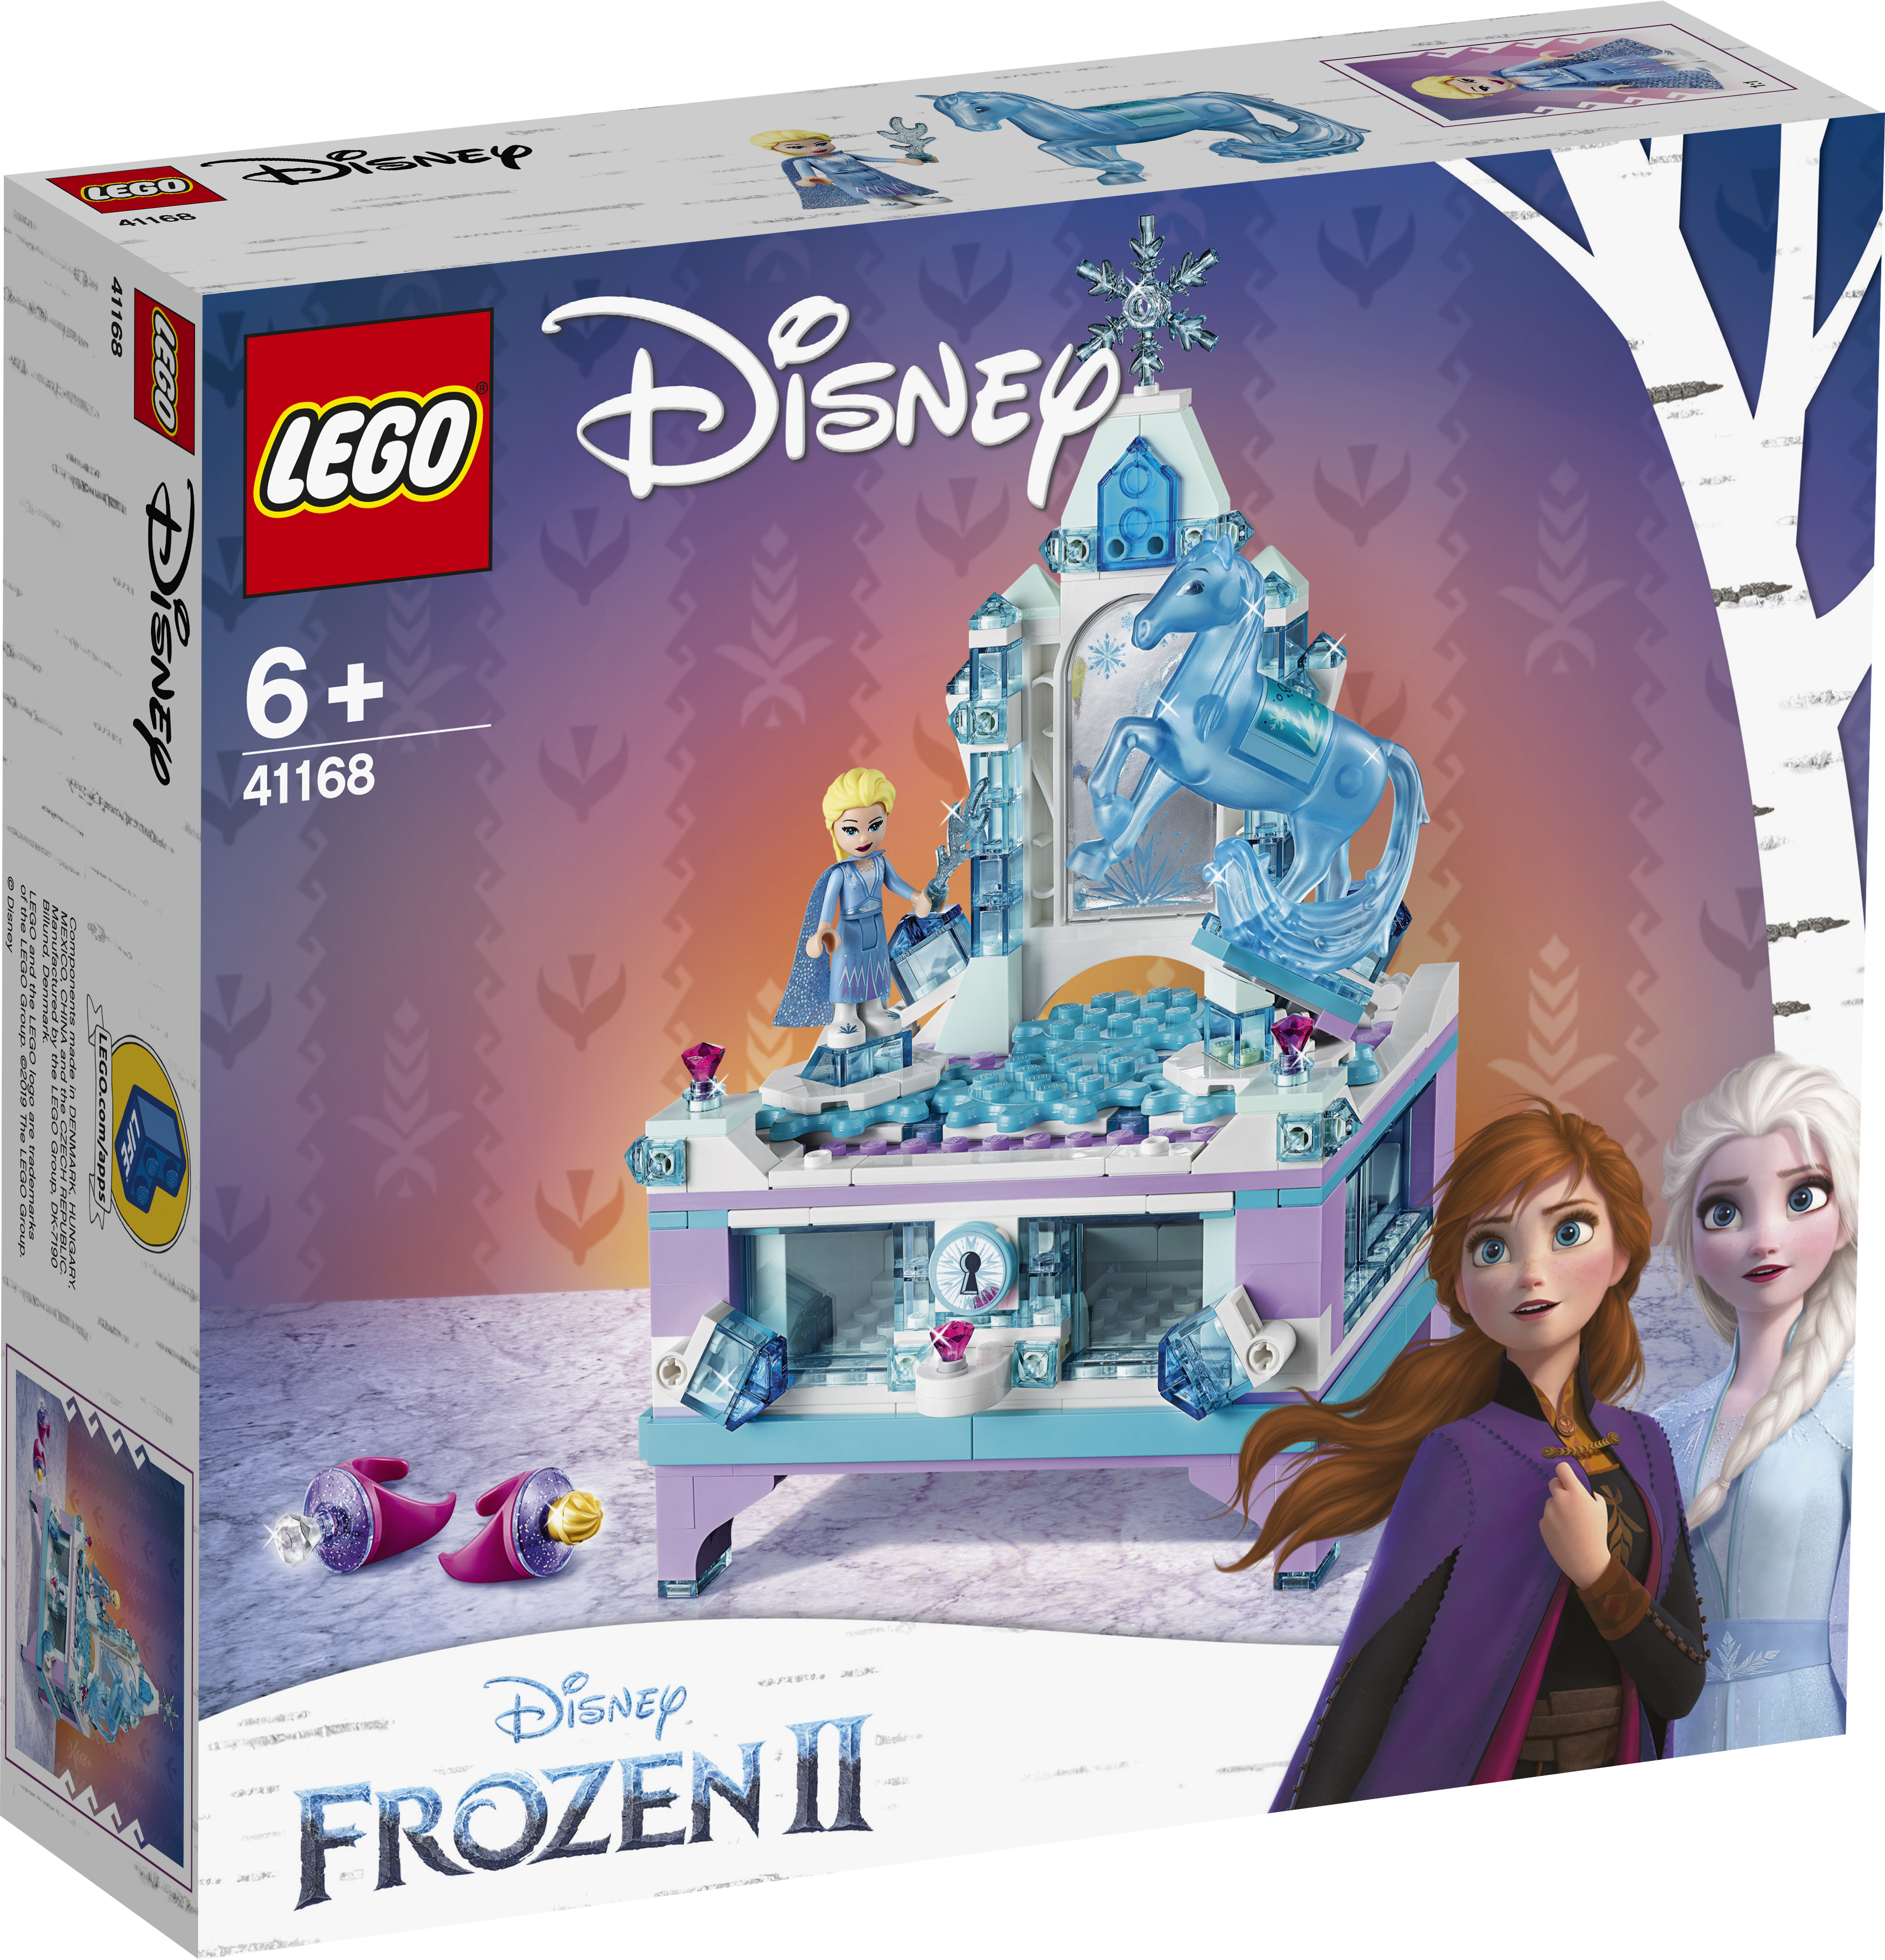  Disney Frozen Ii Elsas Smykkeskrinsmodel - 41168